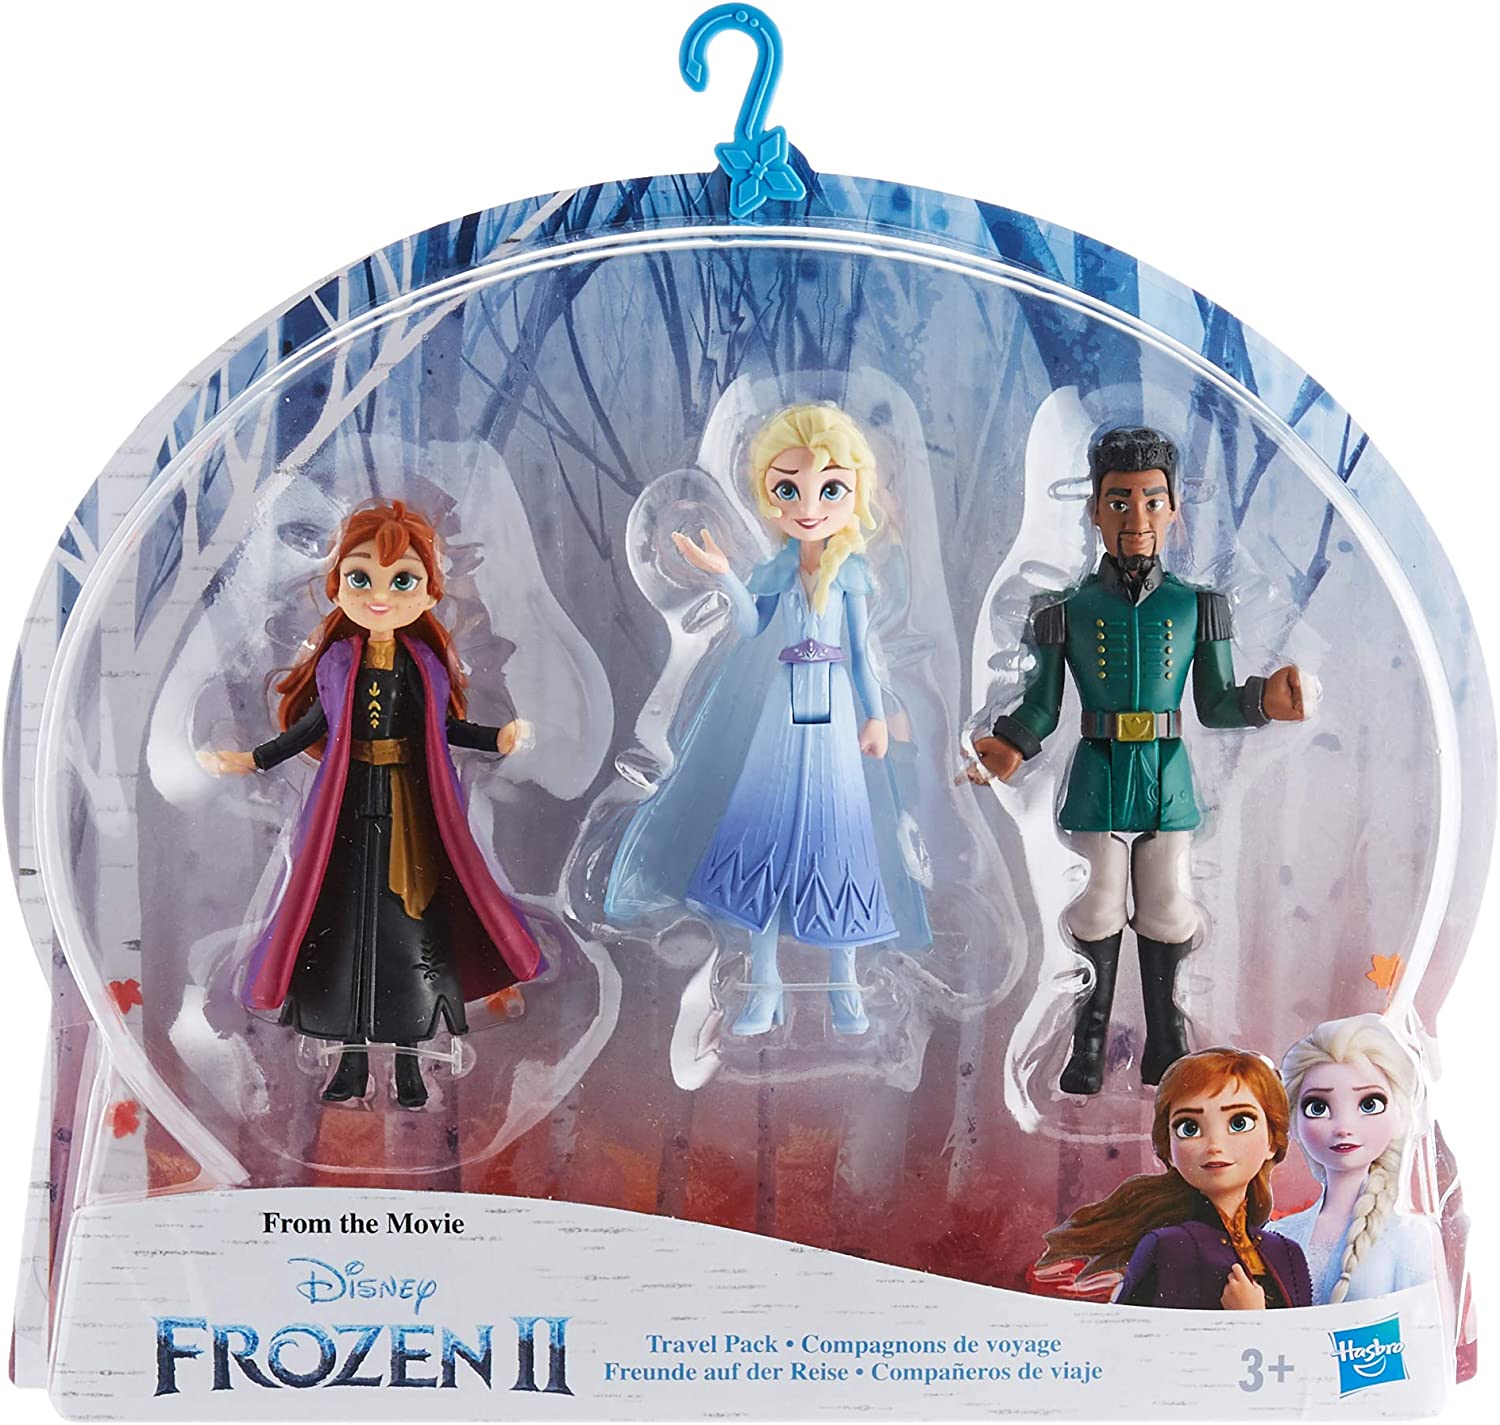 Poupée Elsa 1 - Disney Princess - La Reine des Neiges - Figurine